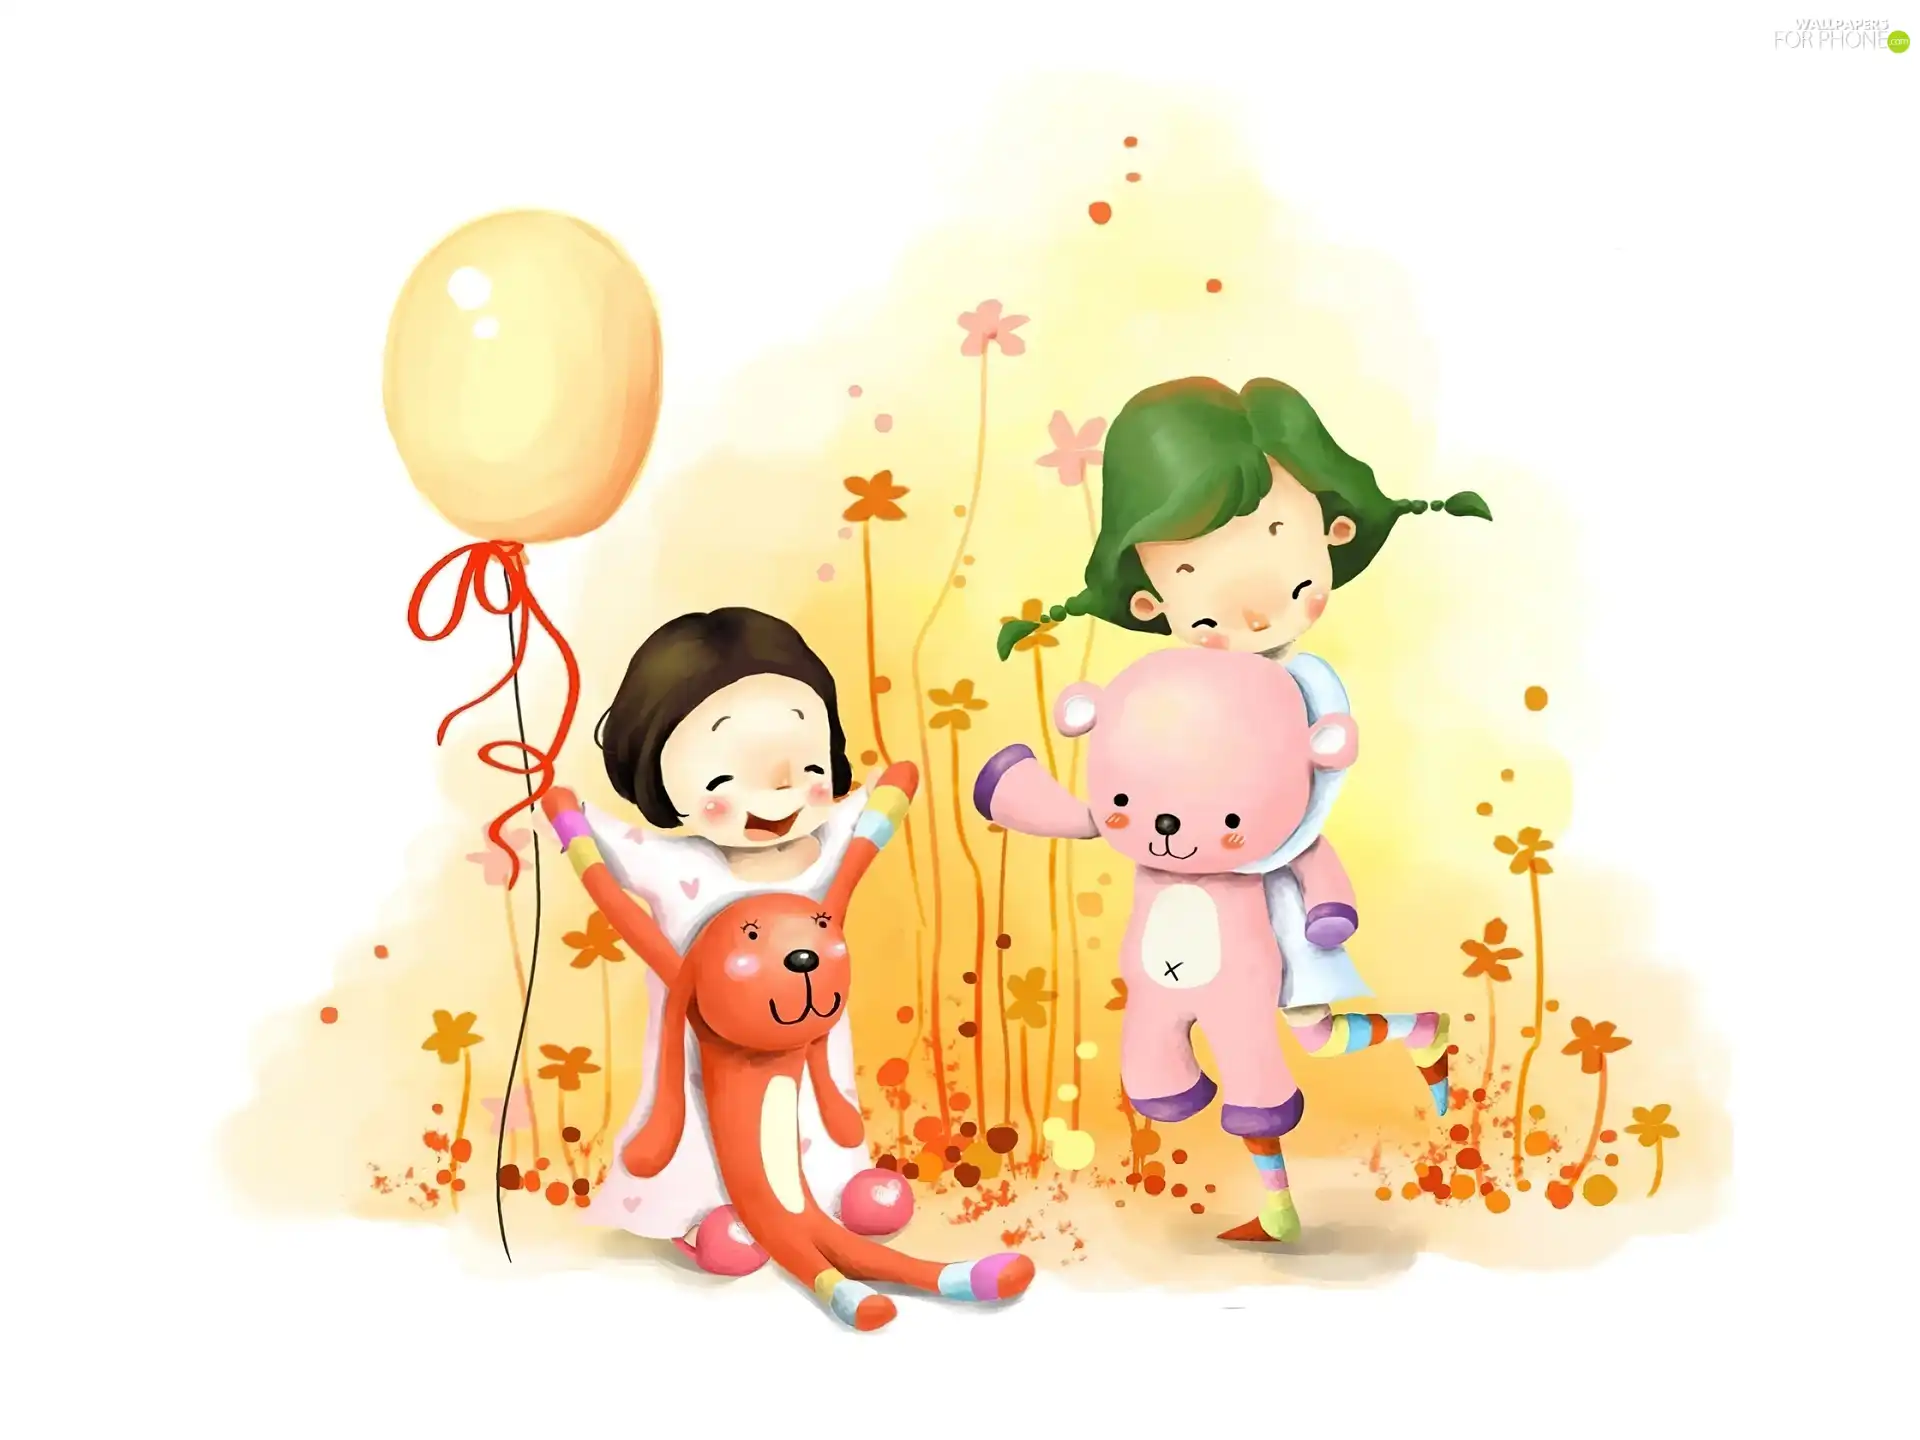 Balloon, Kids, toys